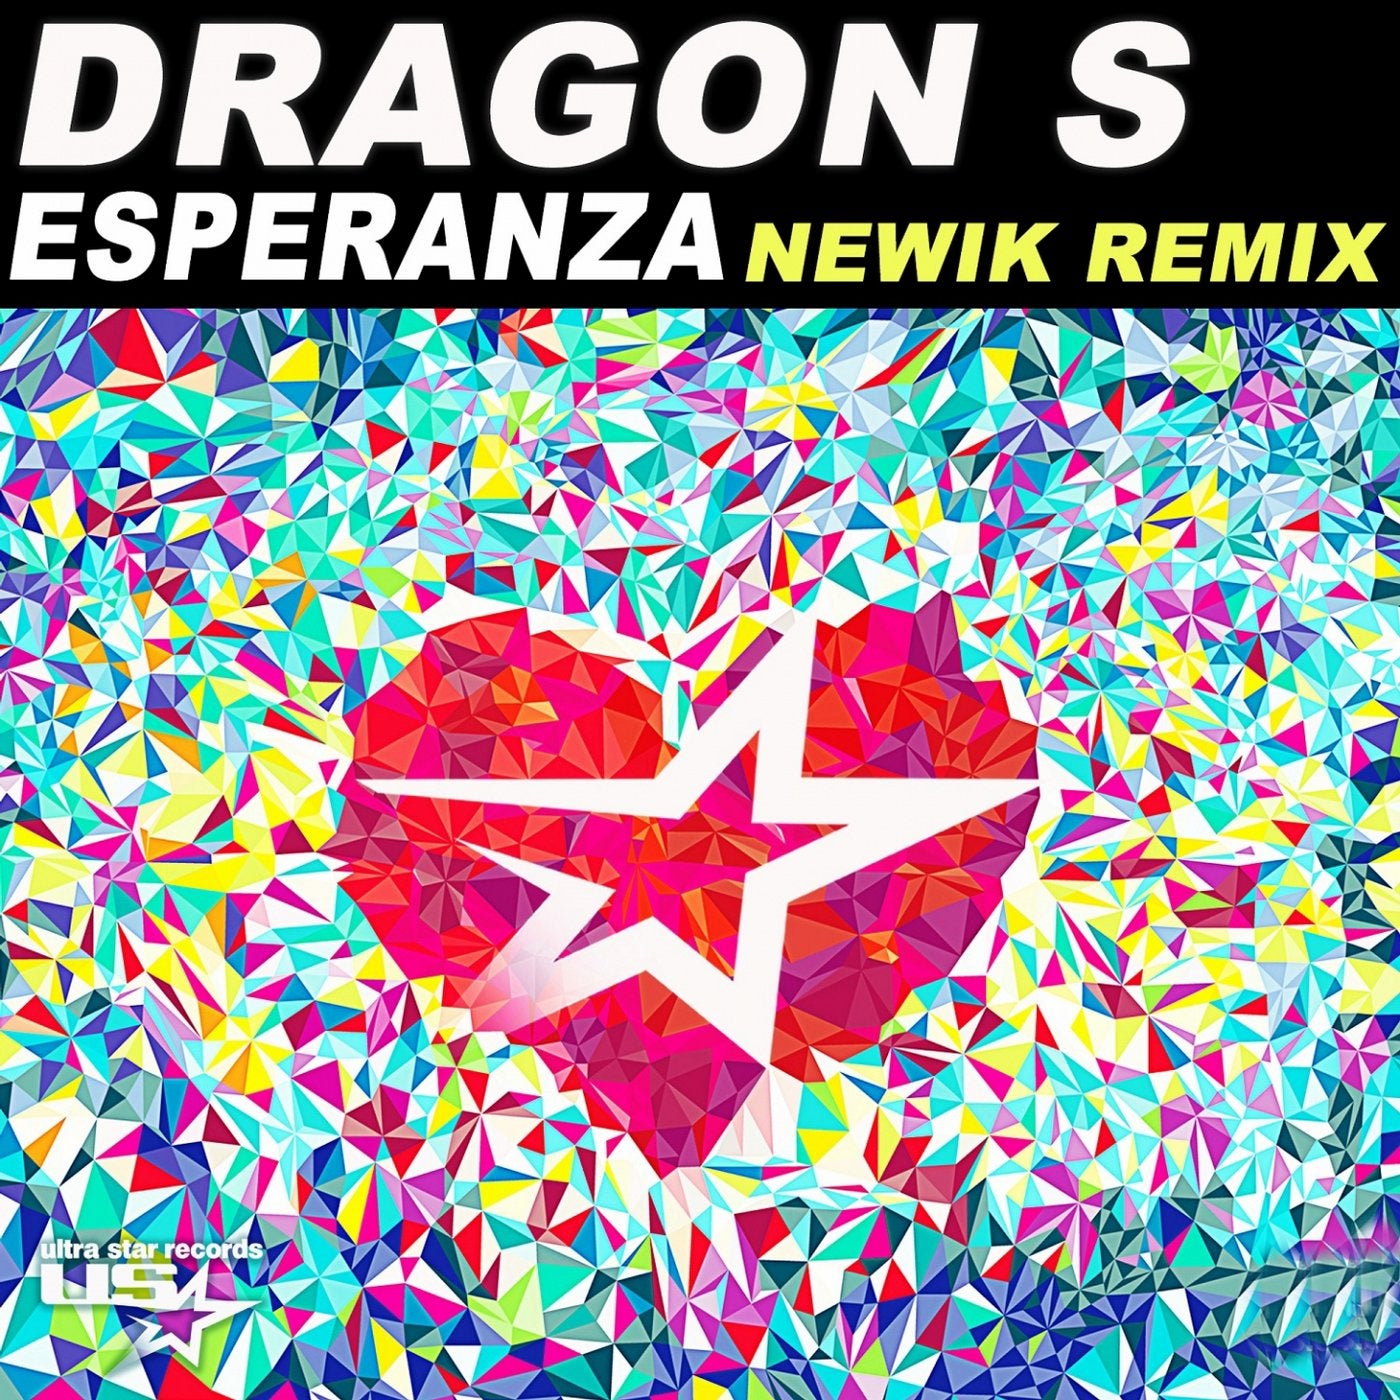 Esperanza (Newik Remix)